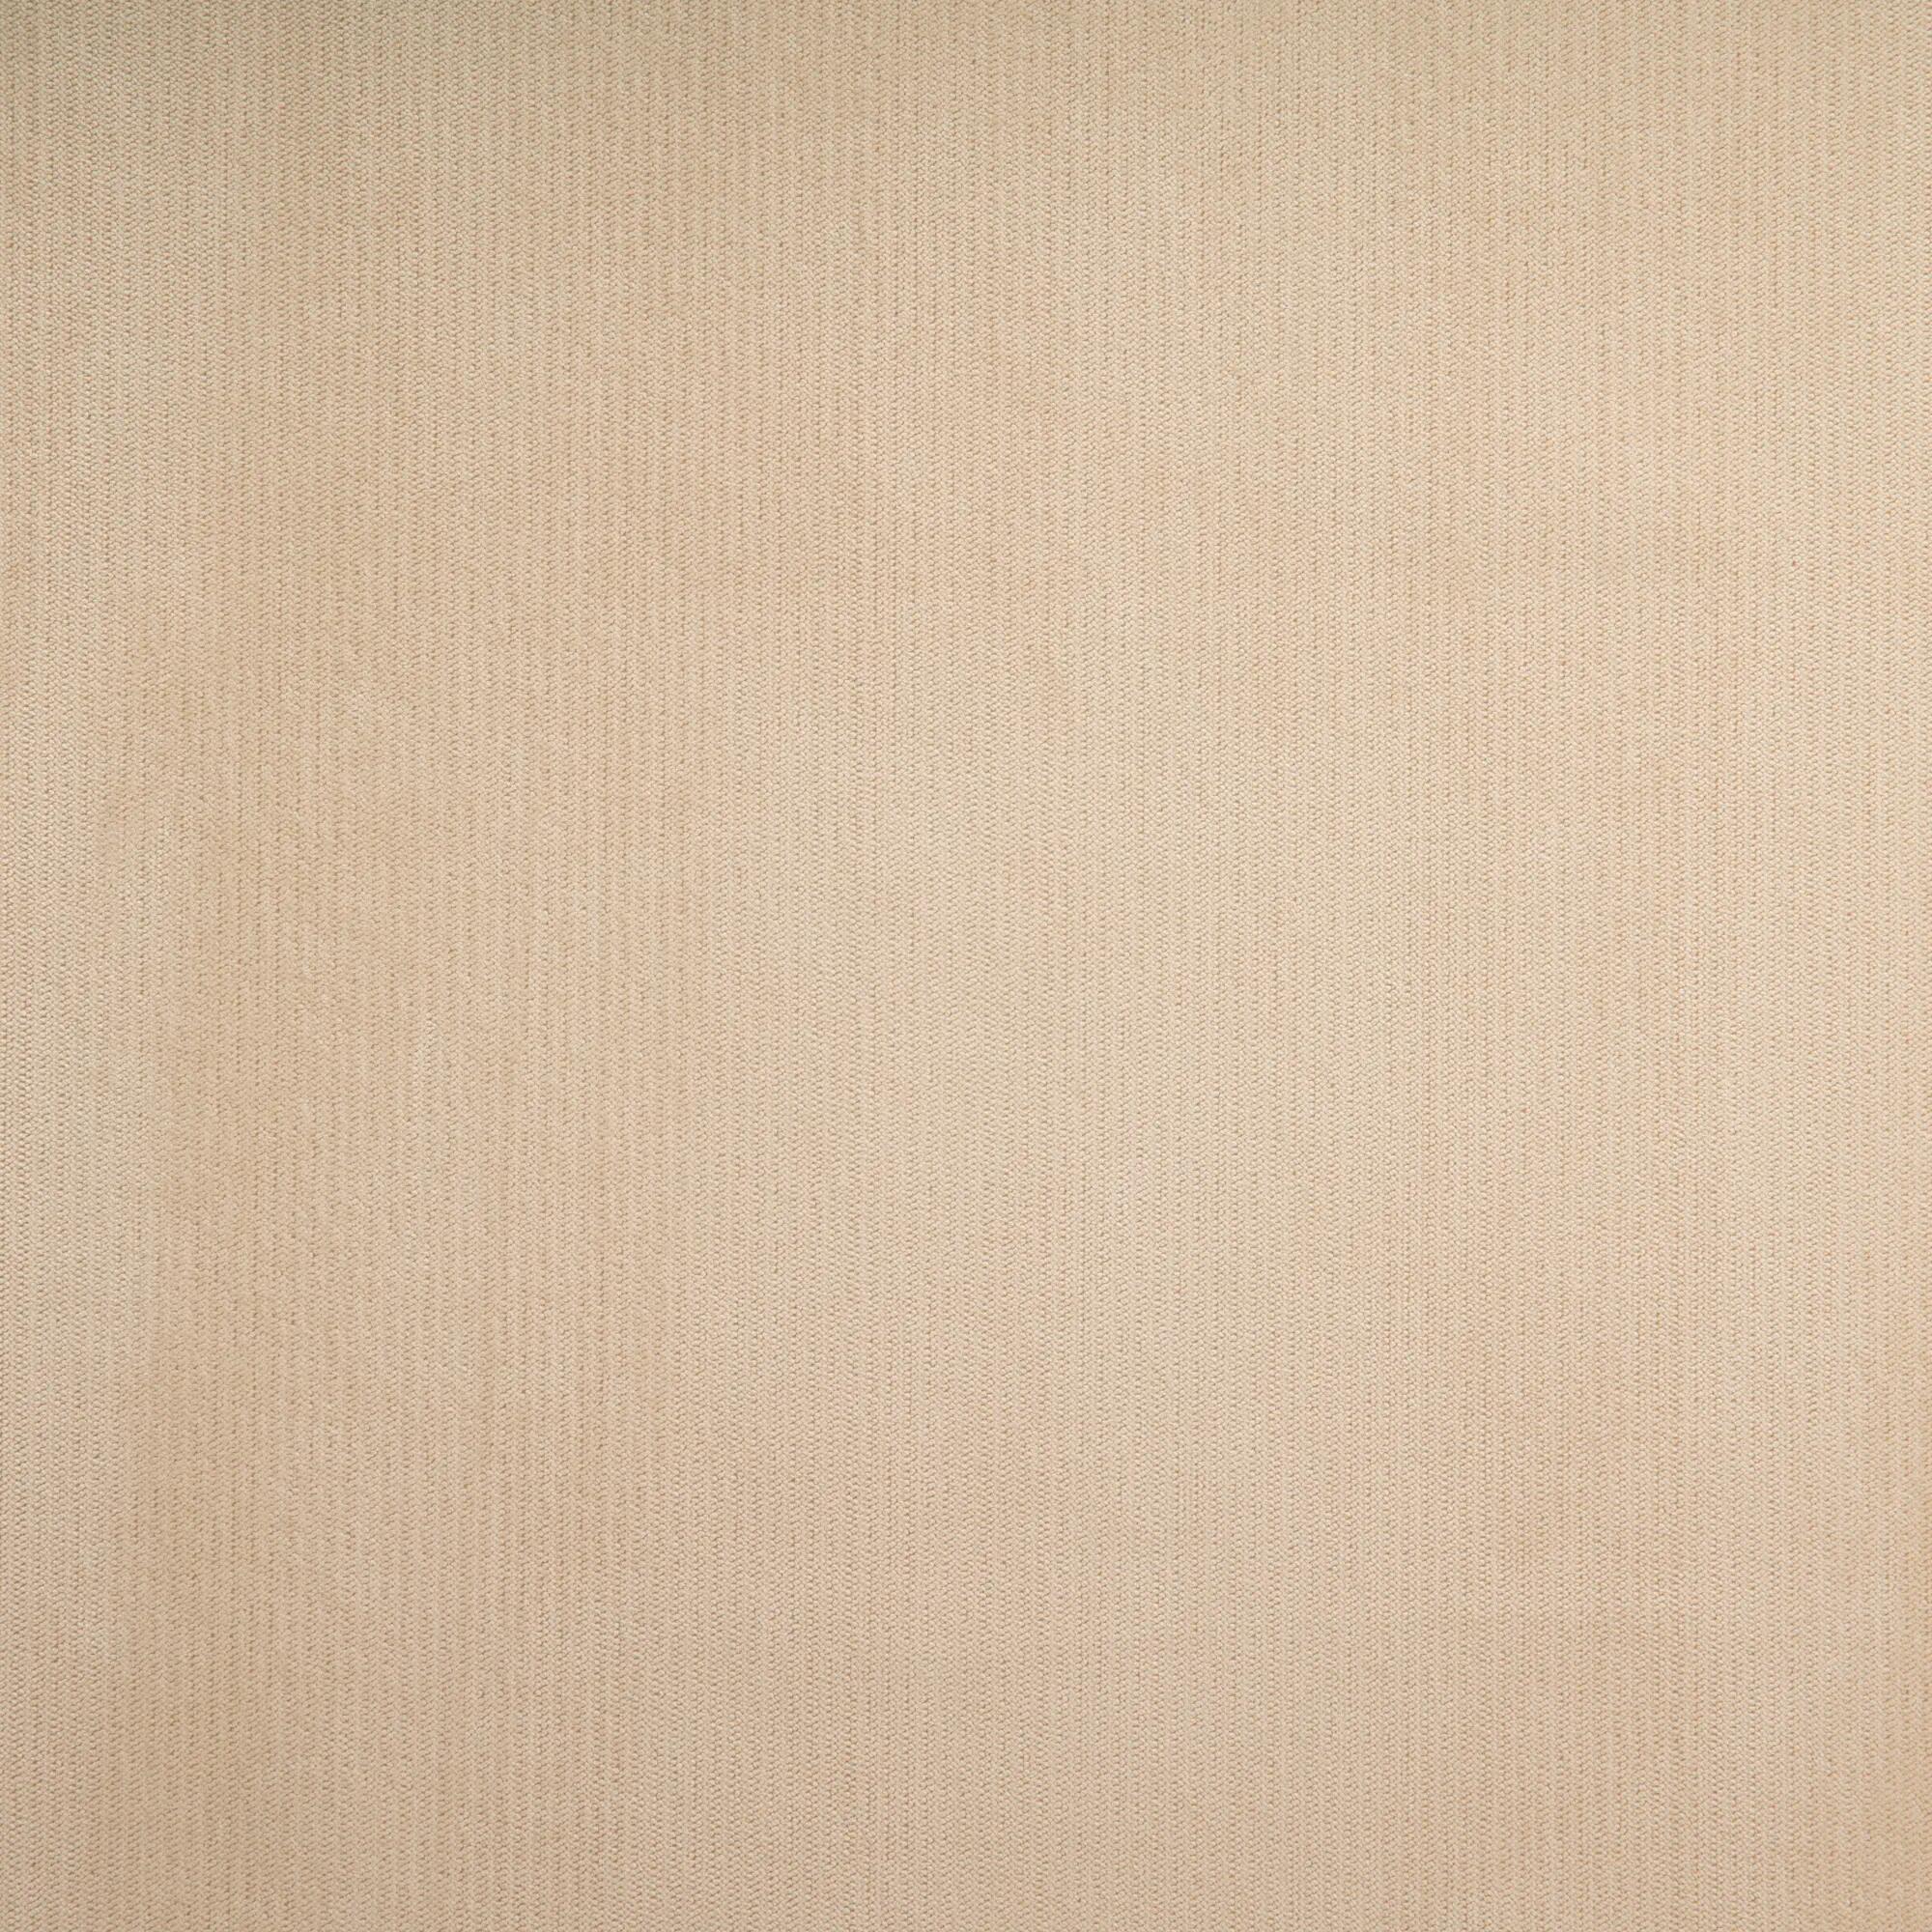 Tela al corte tapicería terciopelo terciopel beige ancho 140 cm